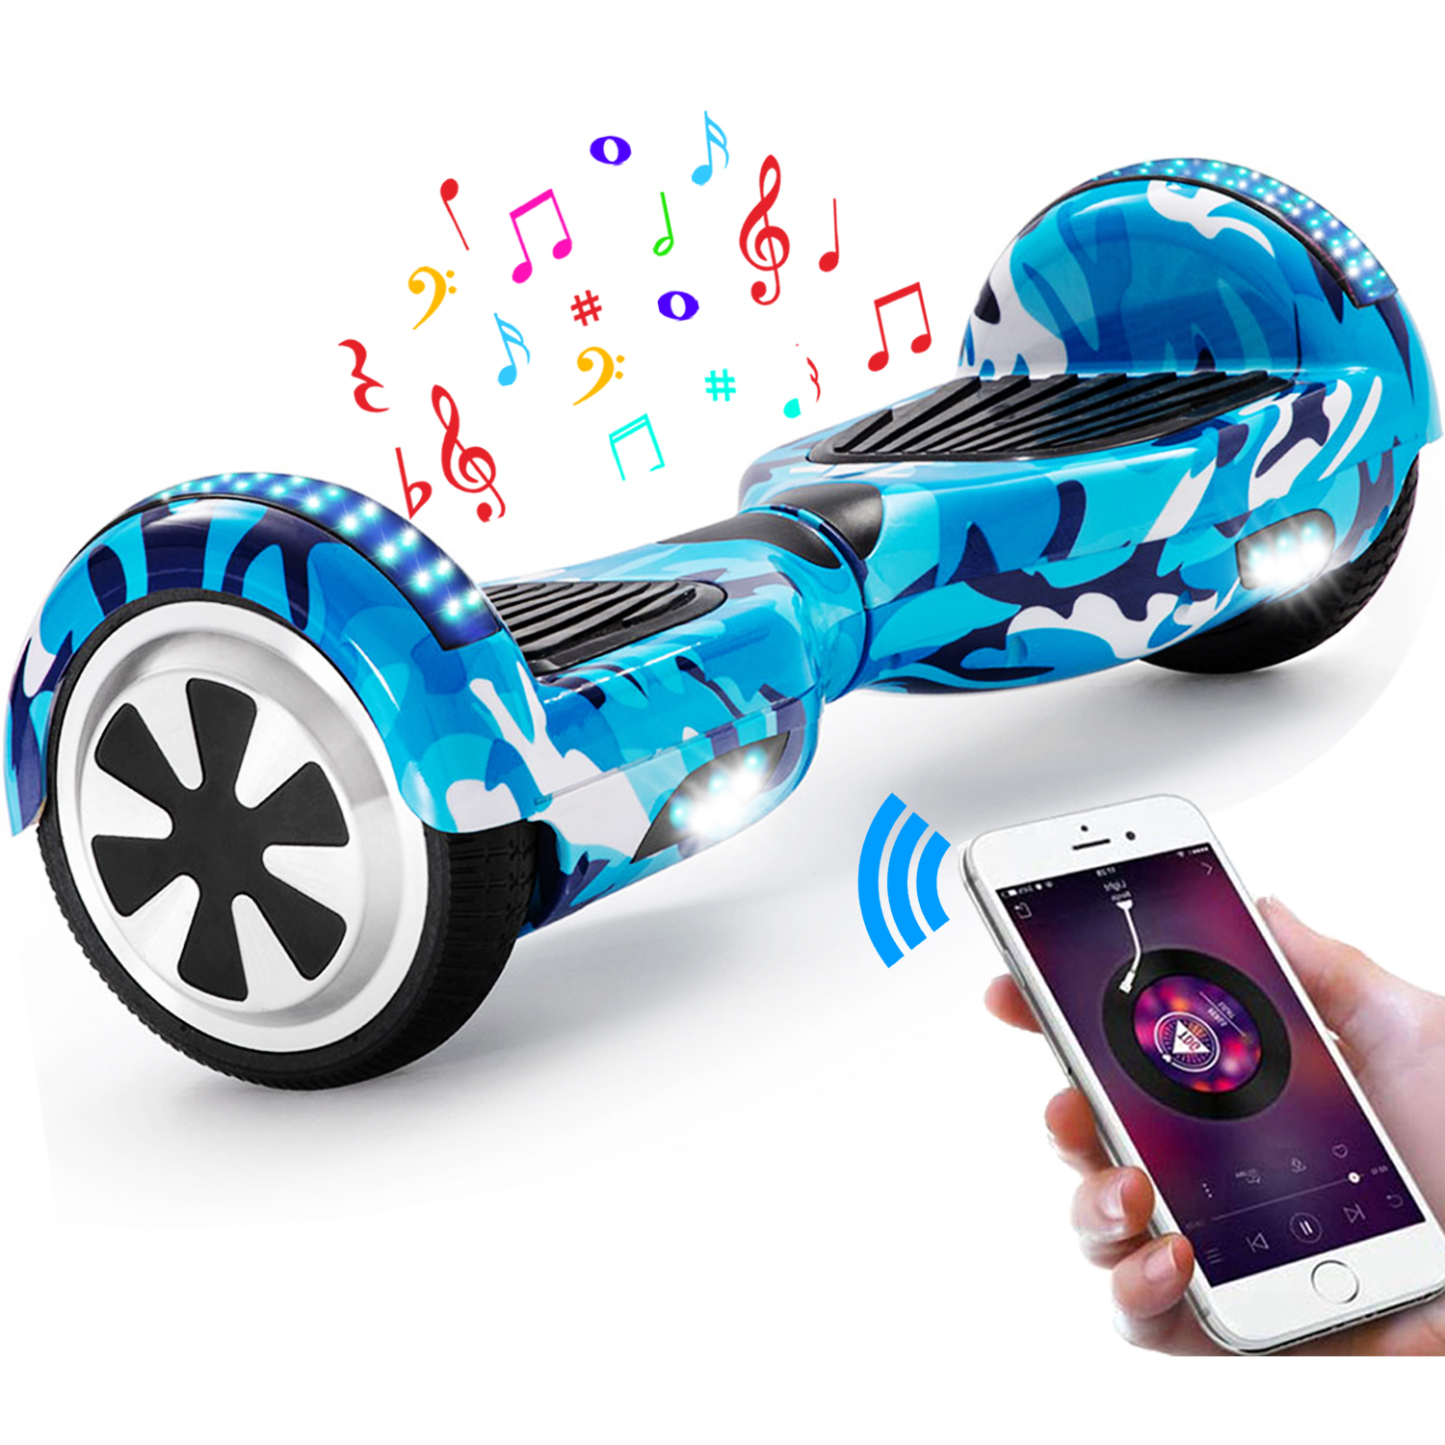 Neues 6,5" Camouflage Hoverboard blau mit Bluetooth Musik Lautsprecher und LED Licht - 500W 12km/h